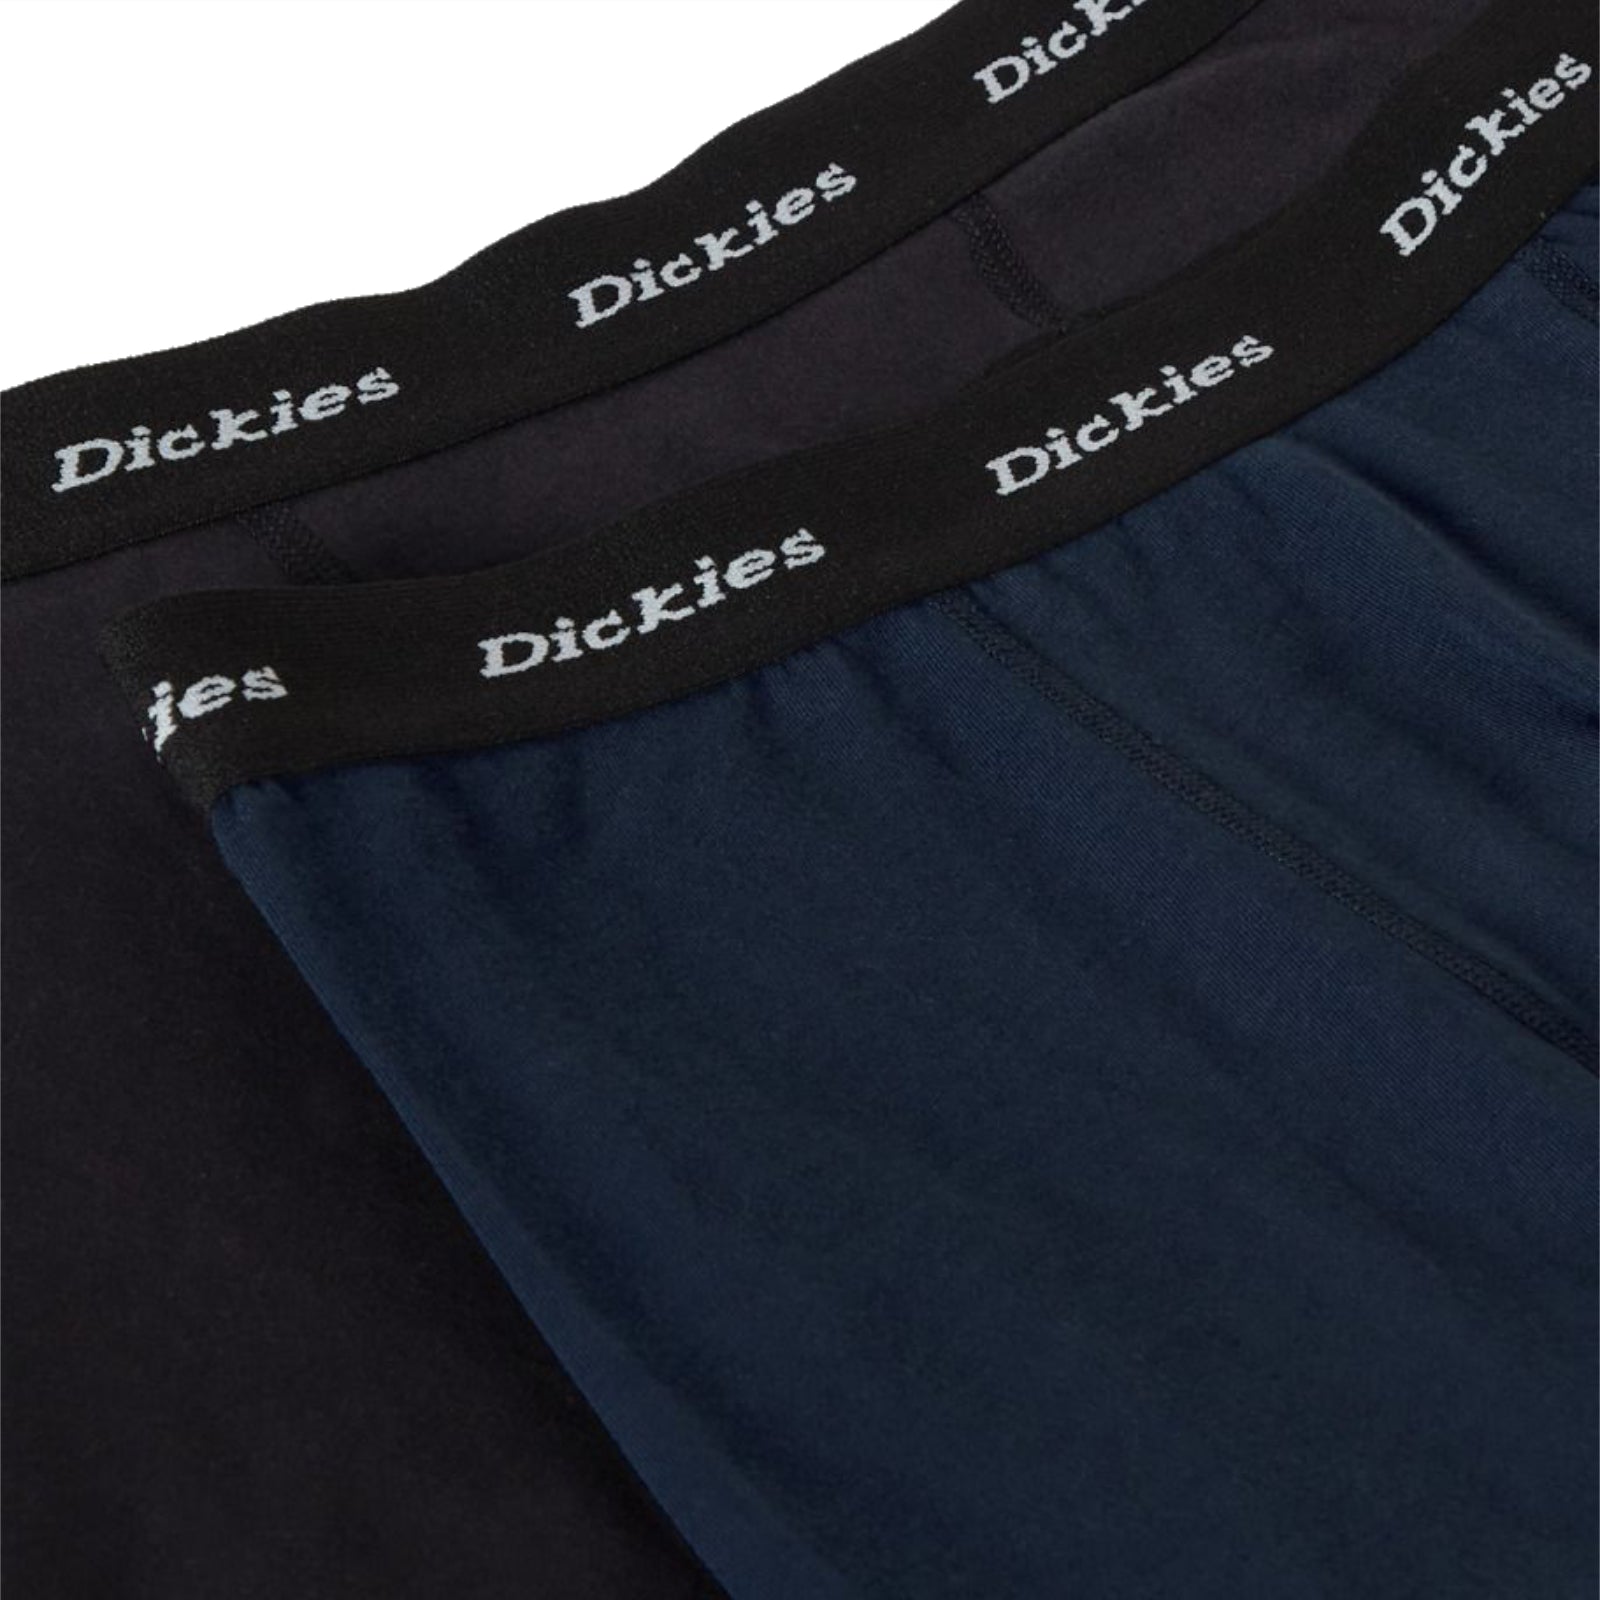 Dickies 2 Pack Trunks Navy/Black. Foto em detalhe dos elasticos dos 2 boxers.